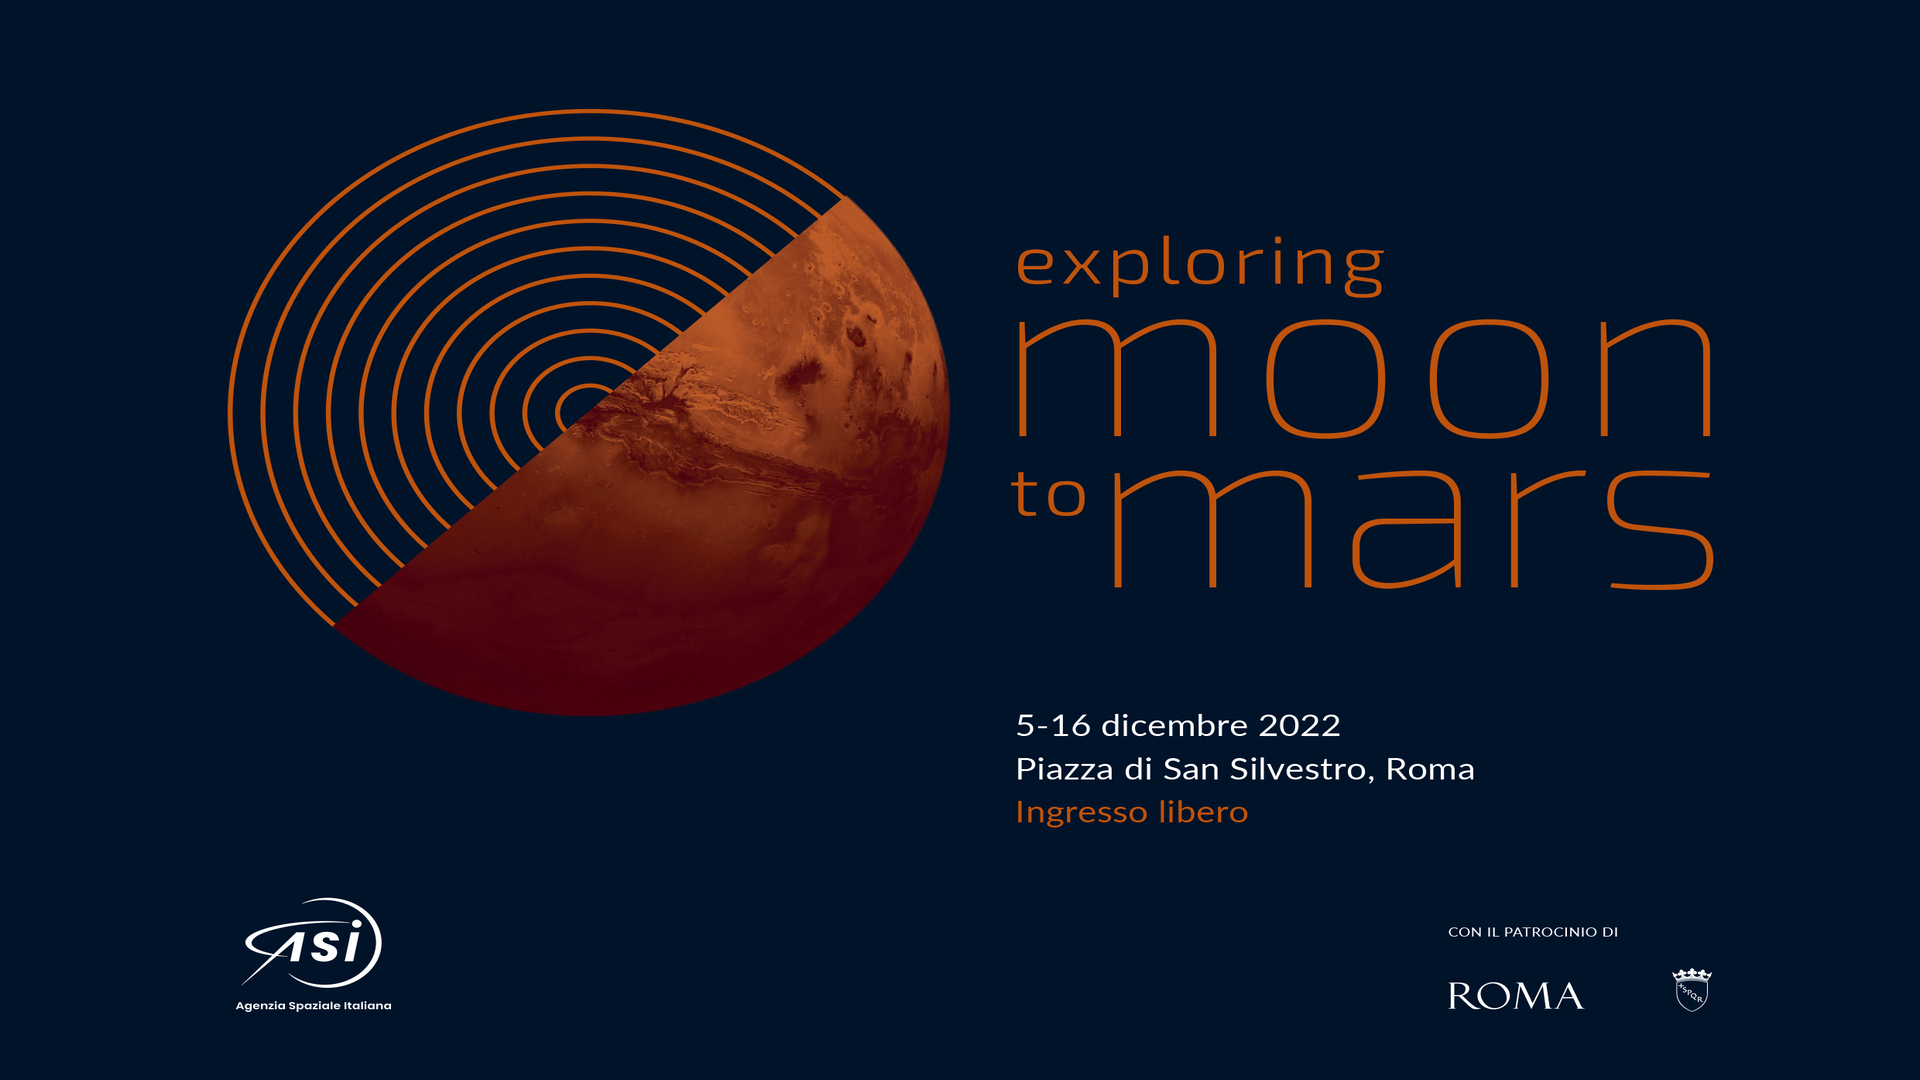 ASI - Exploring Moon To Mars: la mostra dell’Agenzia Spaziale Italiana, patrocinata da Roma Capitale, che racconta passato, presente e futuro dell’esplorazione di Luna e Marte